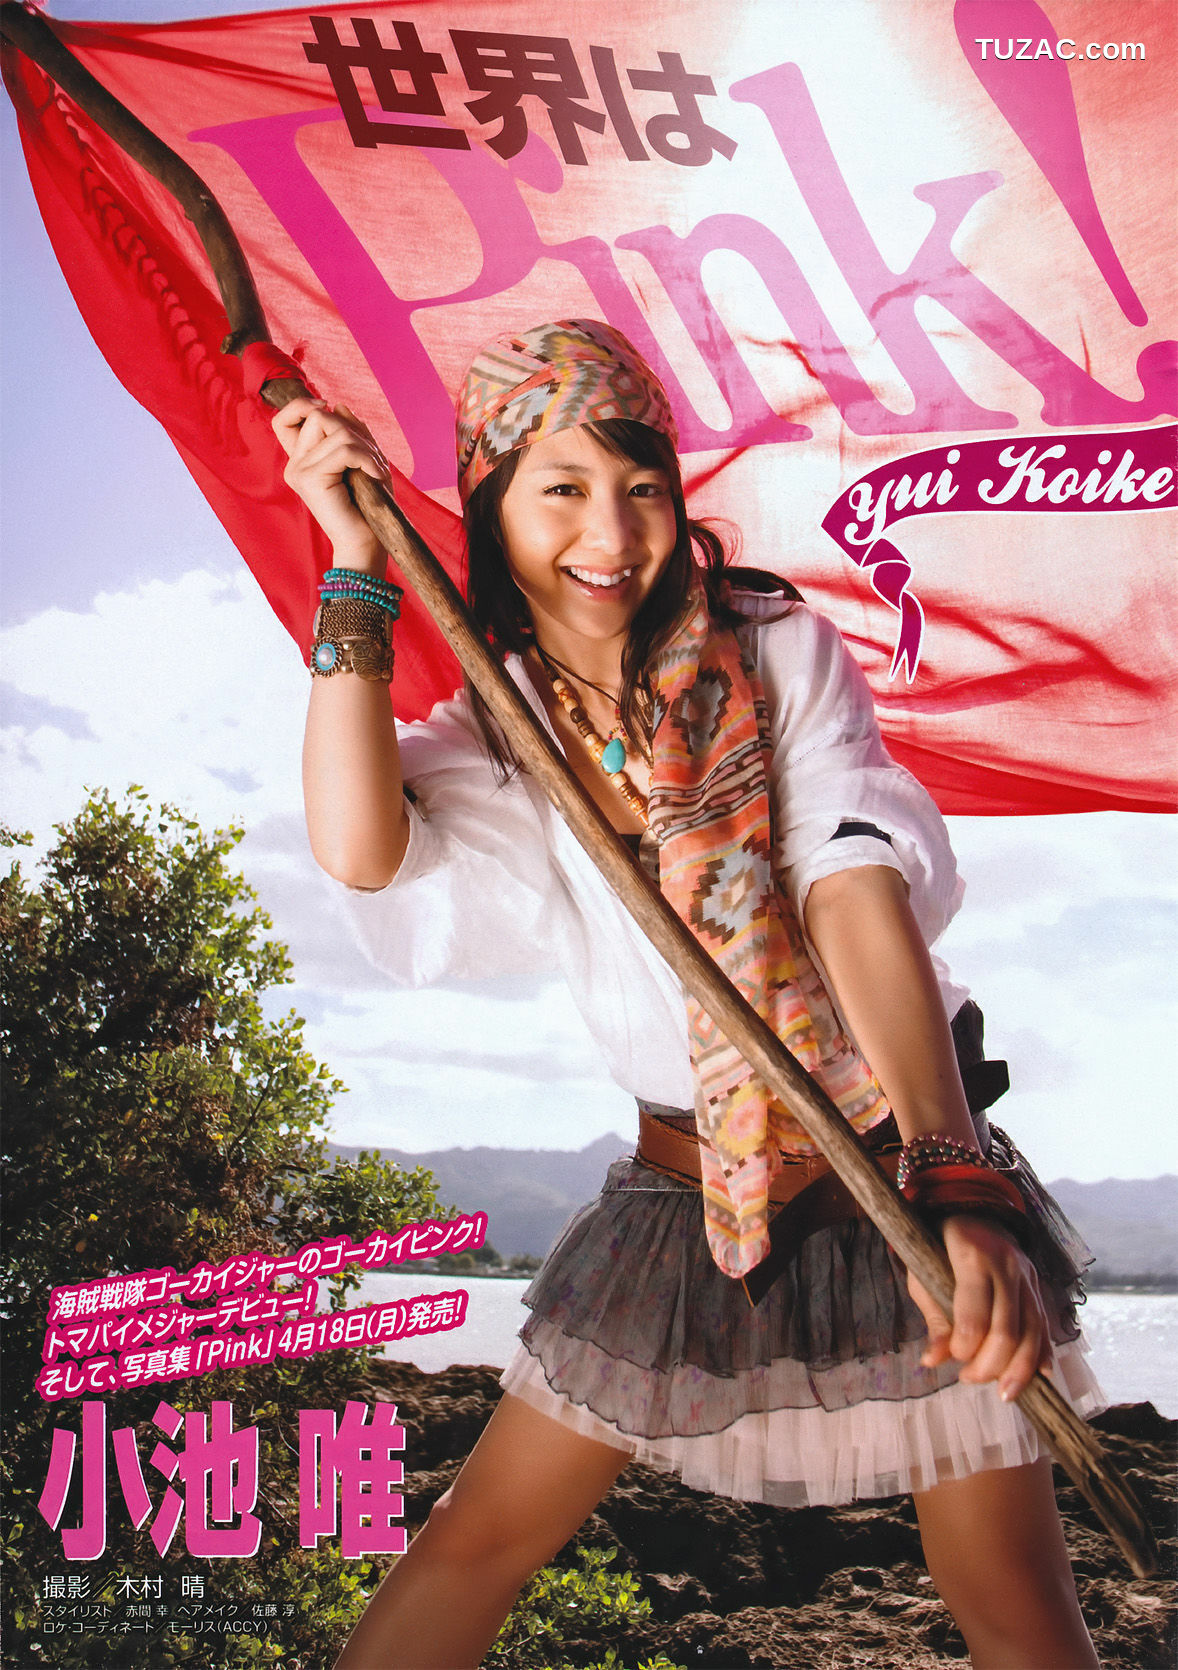 Young Magazine杂志写真_ 小池唯 Yui Koike 2011年No.14 写真杂志[18P]